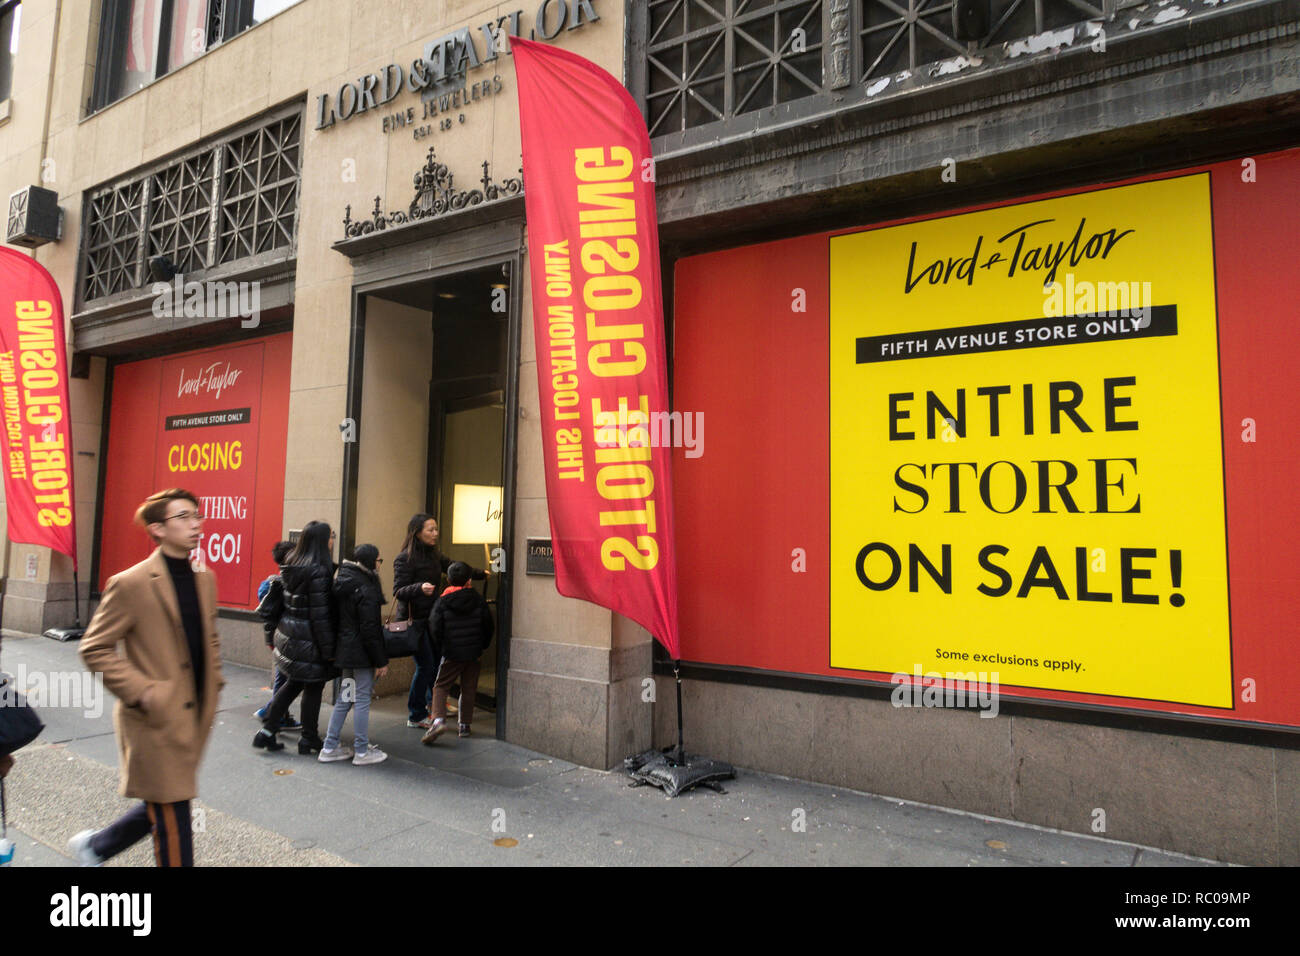 Célèbre grand magasin Lord & Taylor sur la Cinquième Avenue ferme ses portes, New York City, USA Banque D'Images